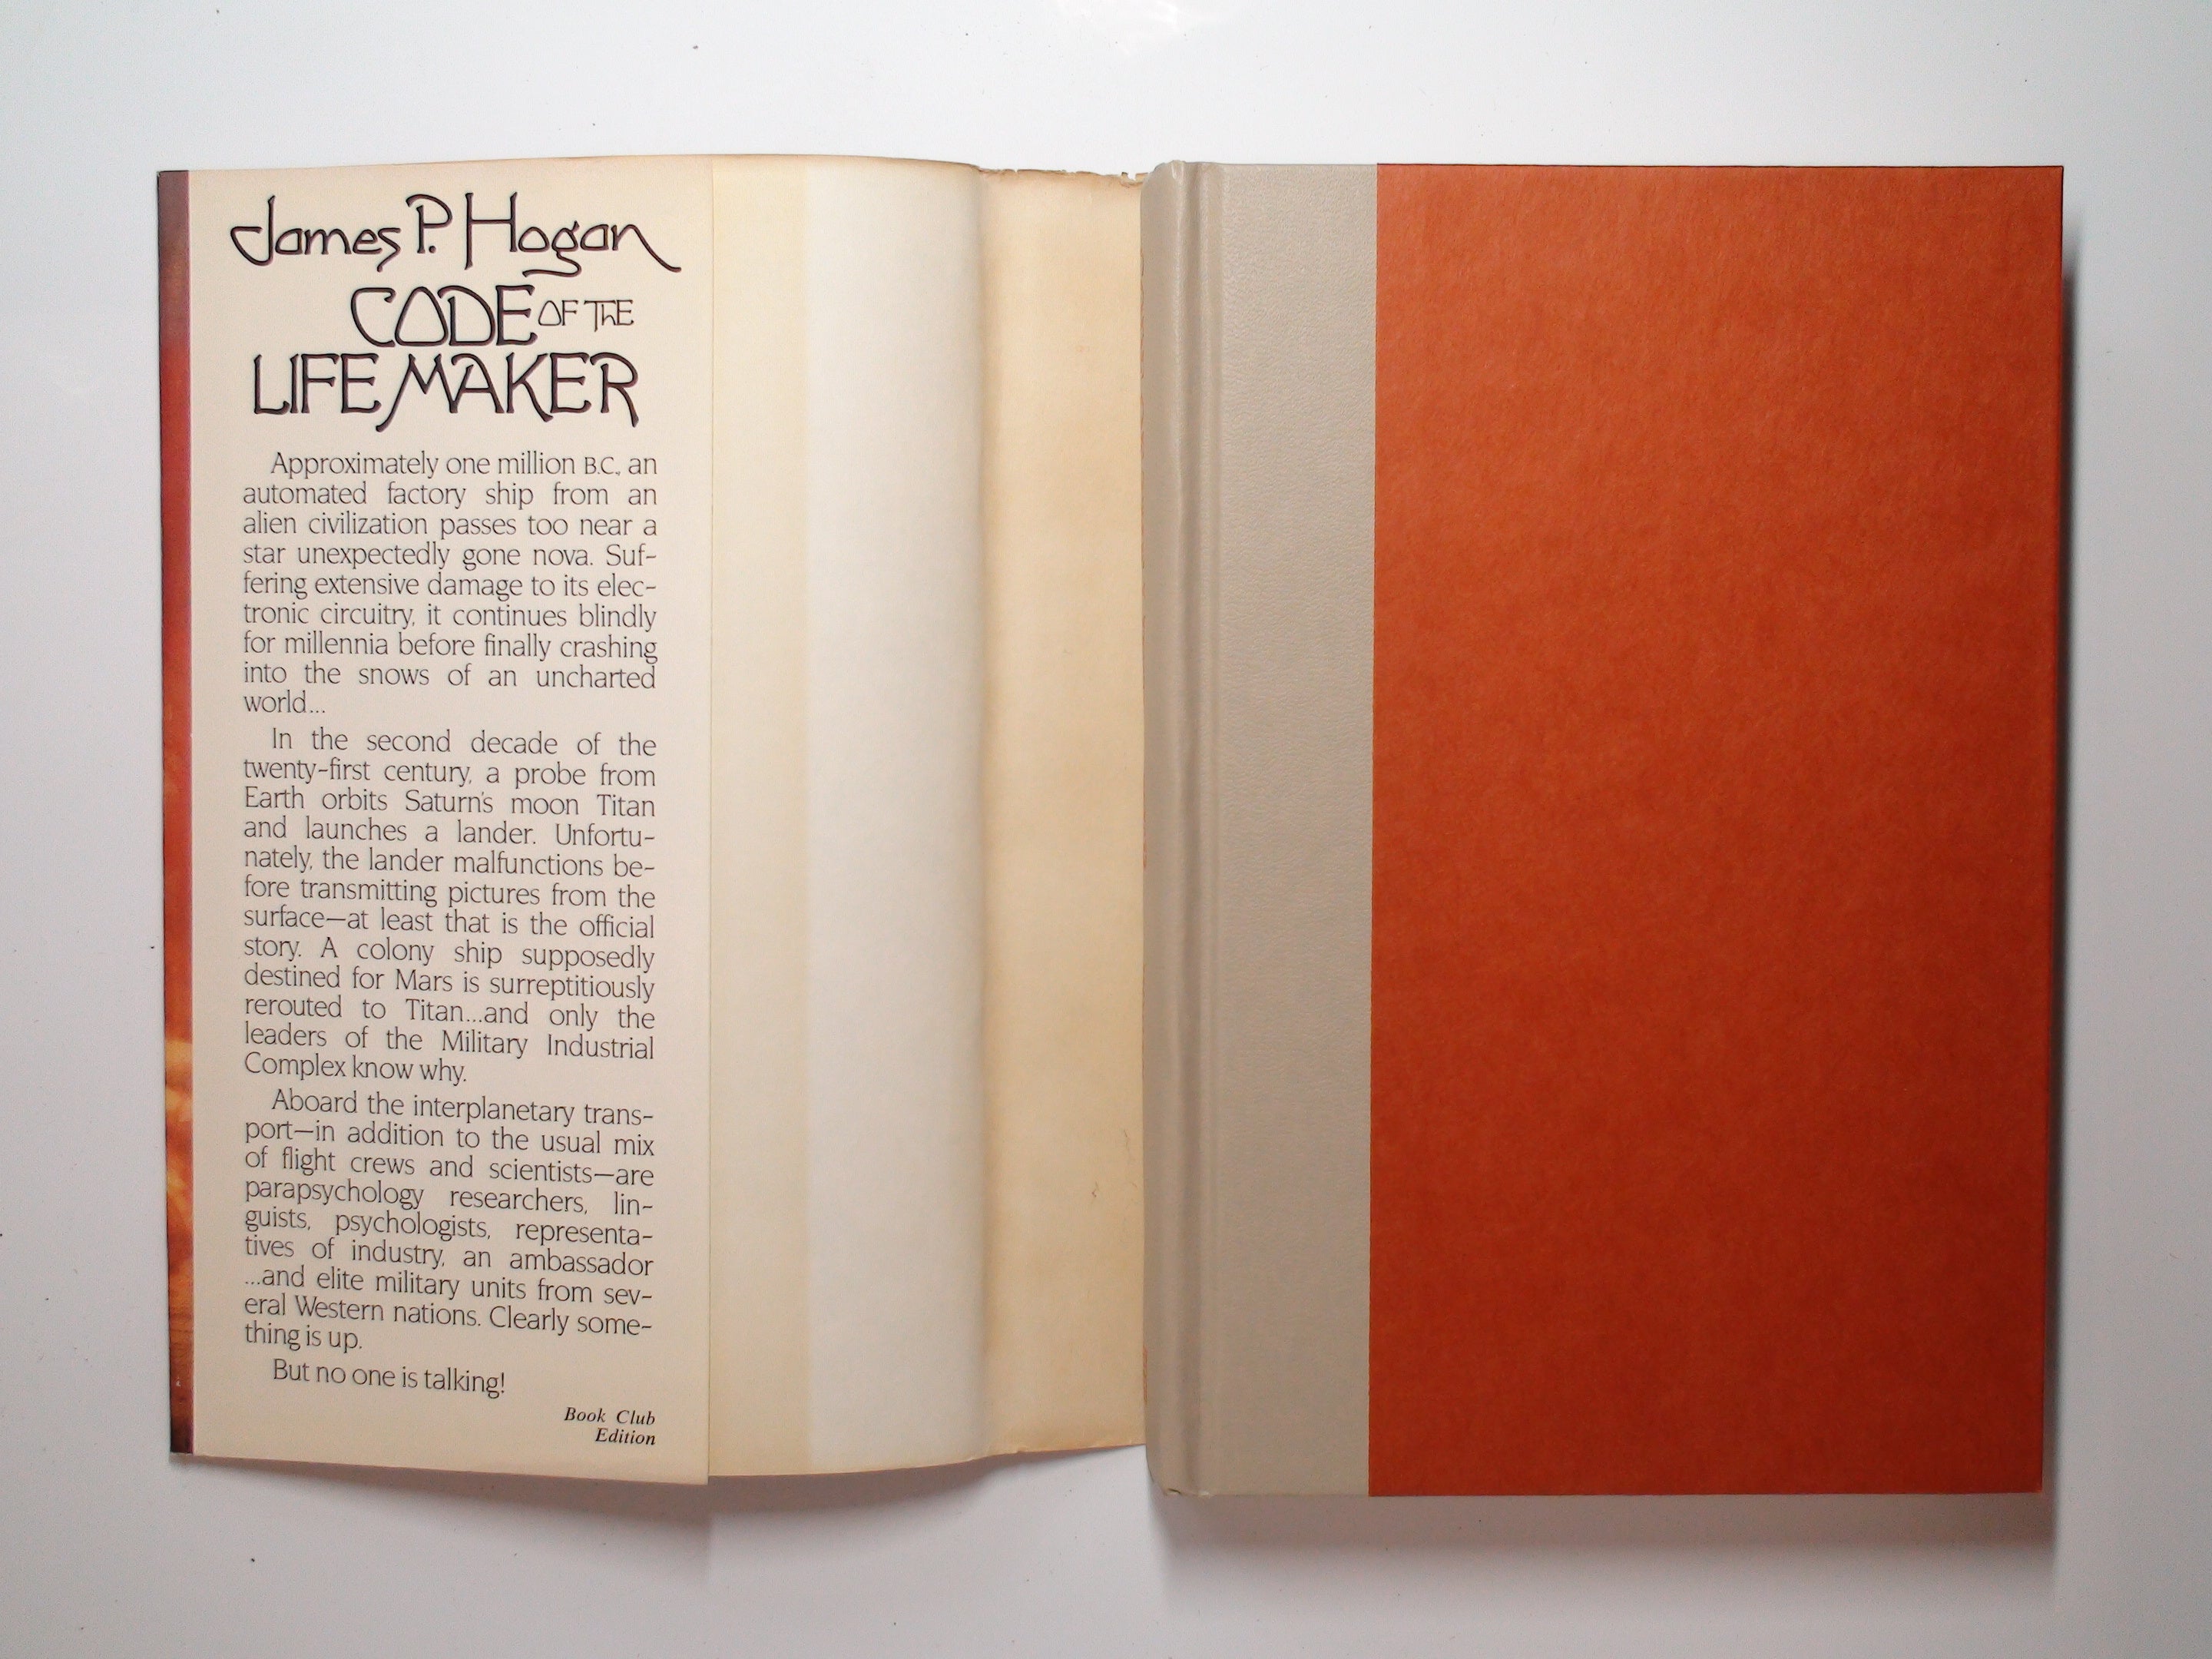 Code of the Life Maker by James P. Hogan, Book Club Ed. w/ DJ, 1983